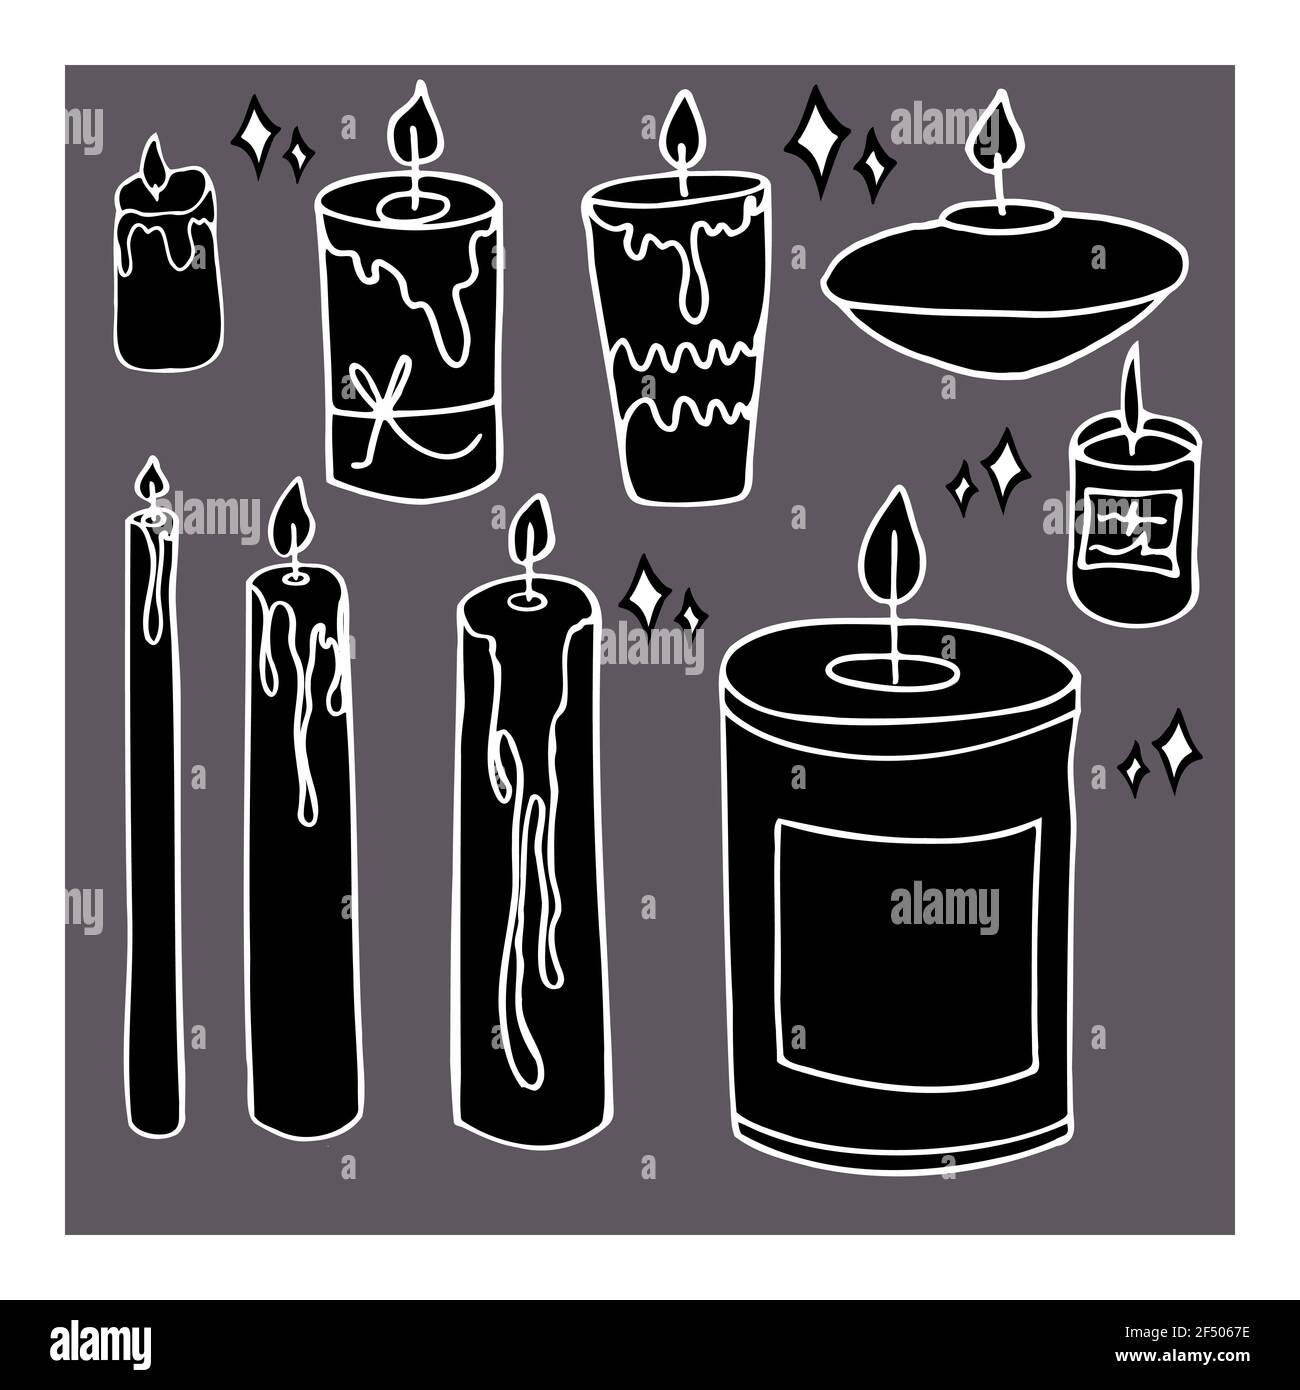 ensemble vectoriel de bougies magiques isolées contrastant Banque D'Images